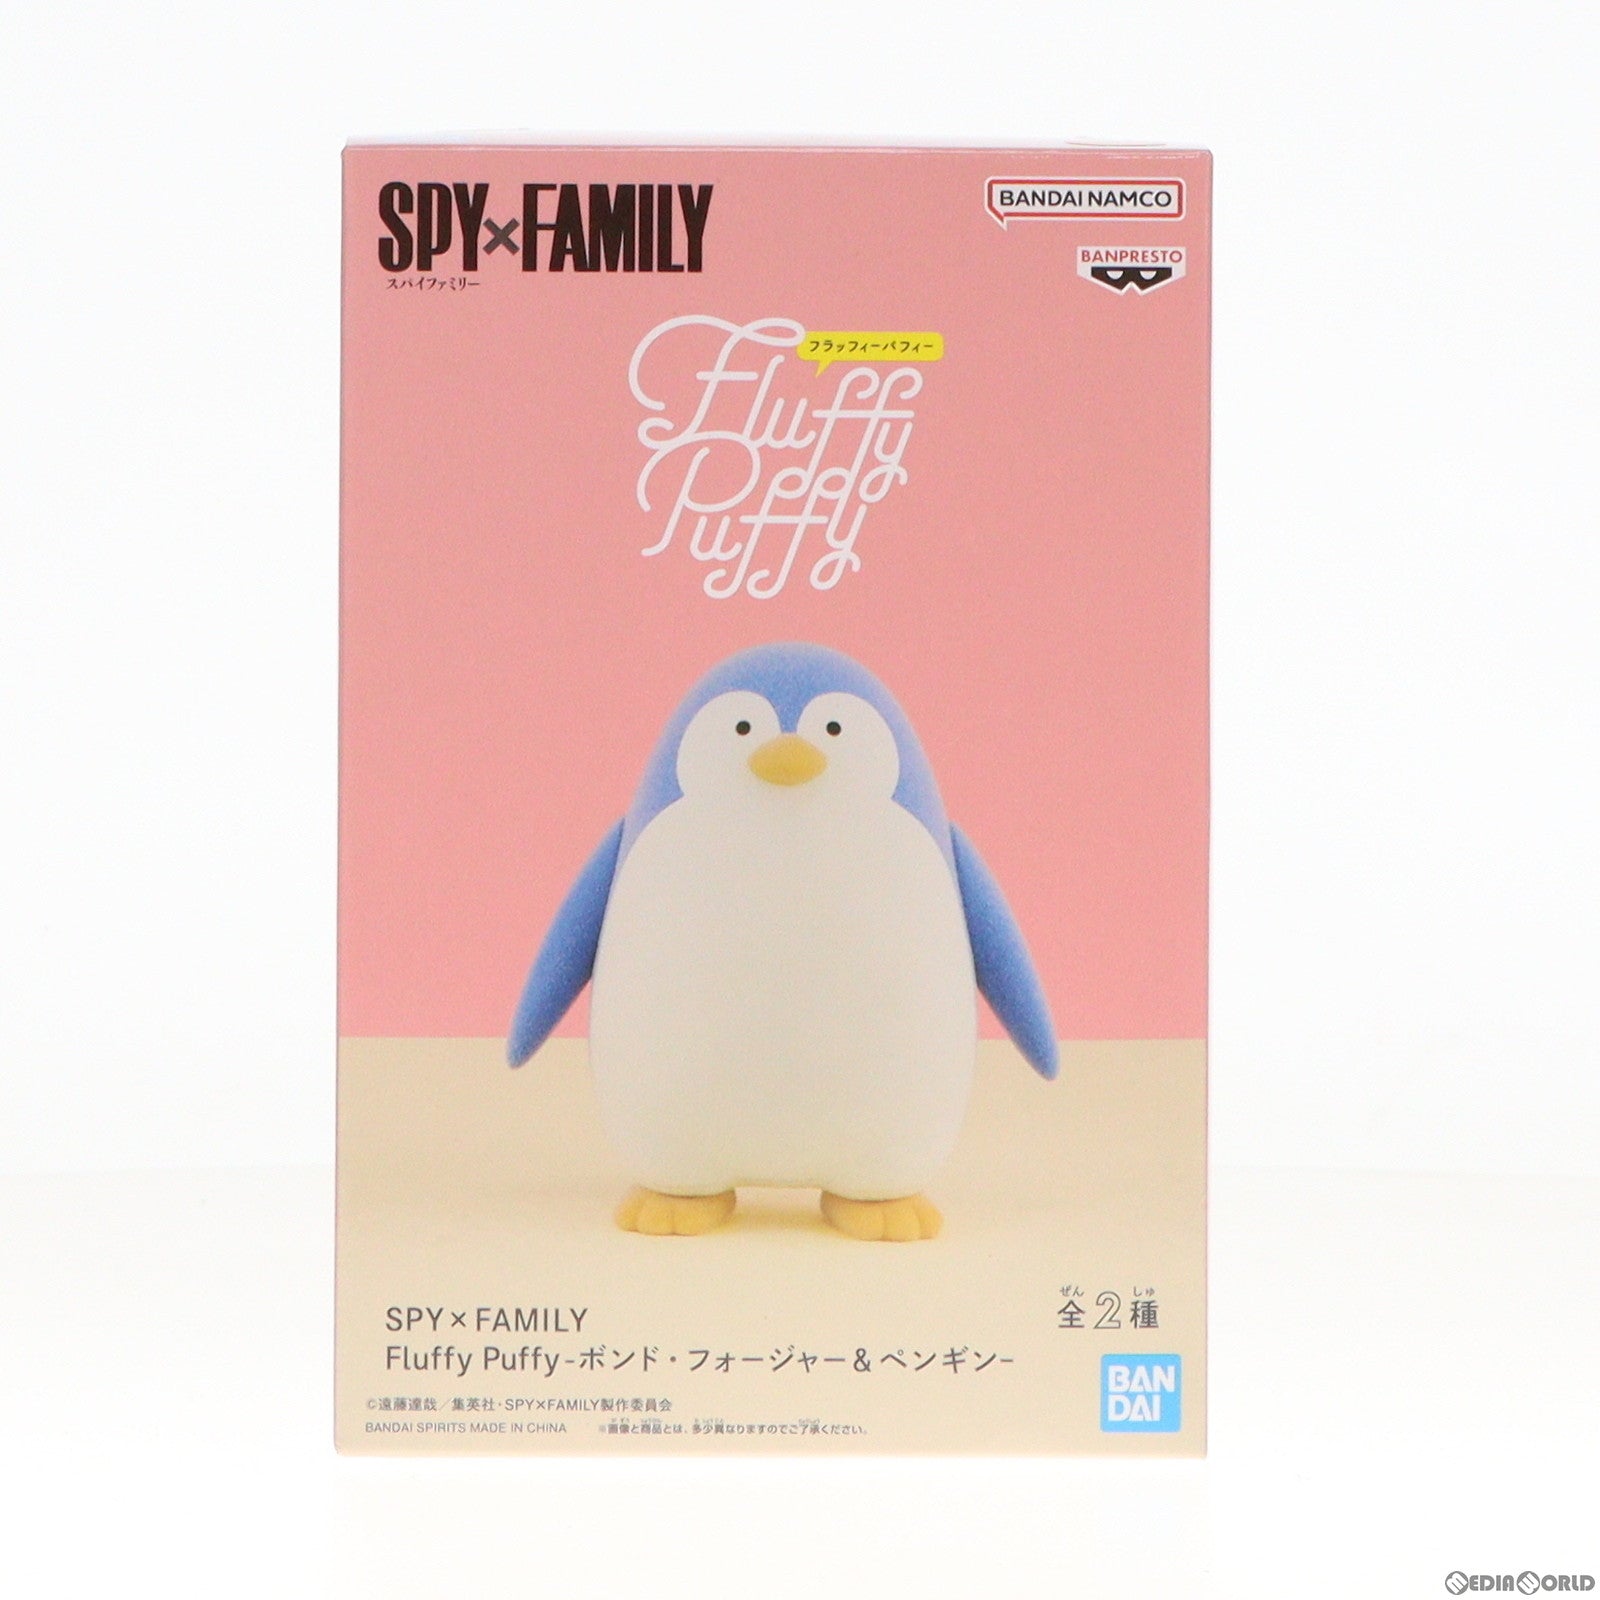 【中古即納】[FIG]ペンギン SPY×FAMILY(スパイファミリー) Fluffy Puffy-ボンド・フォージャー&ペンギン- フィギュア プライズ(2686403) バンプレスト(20231231)